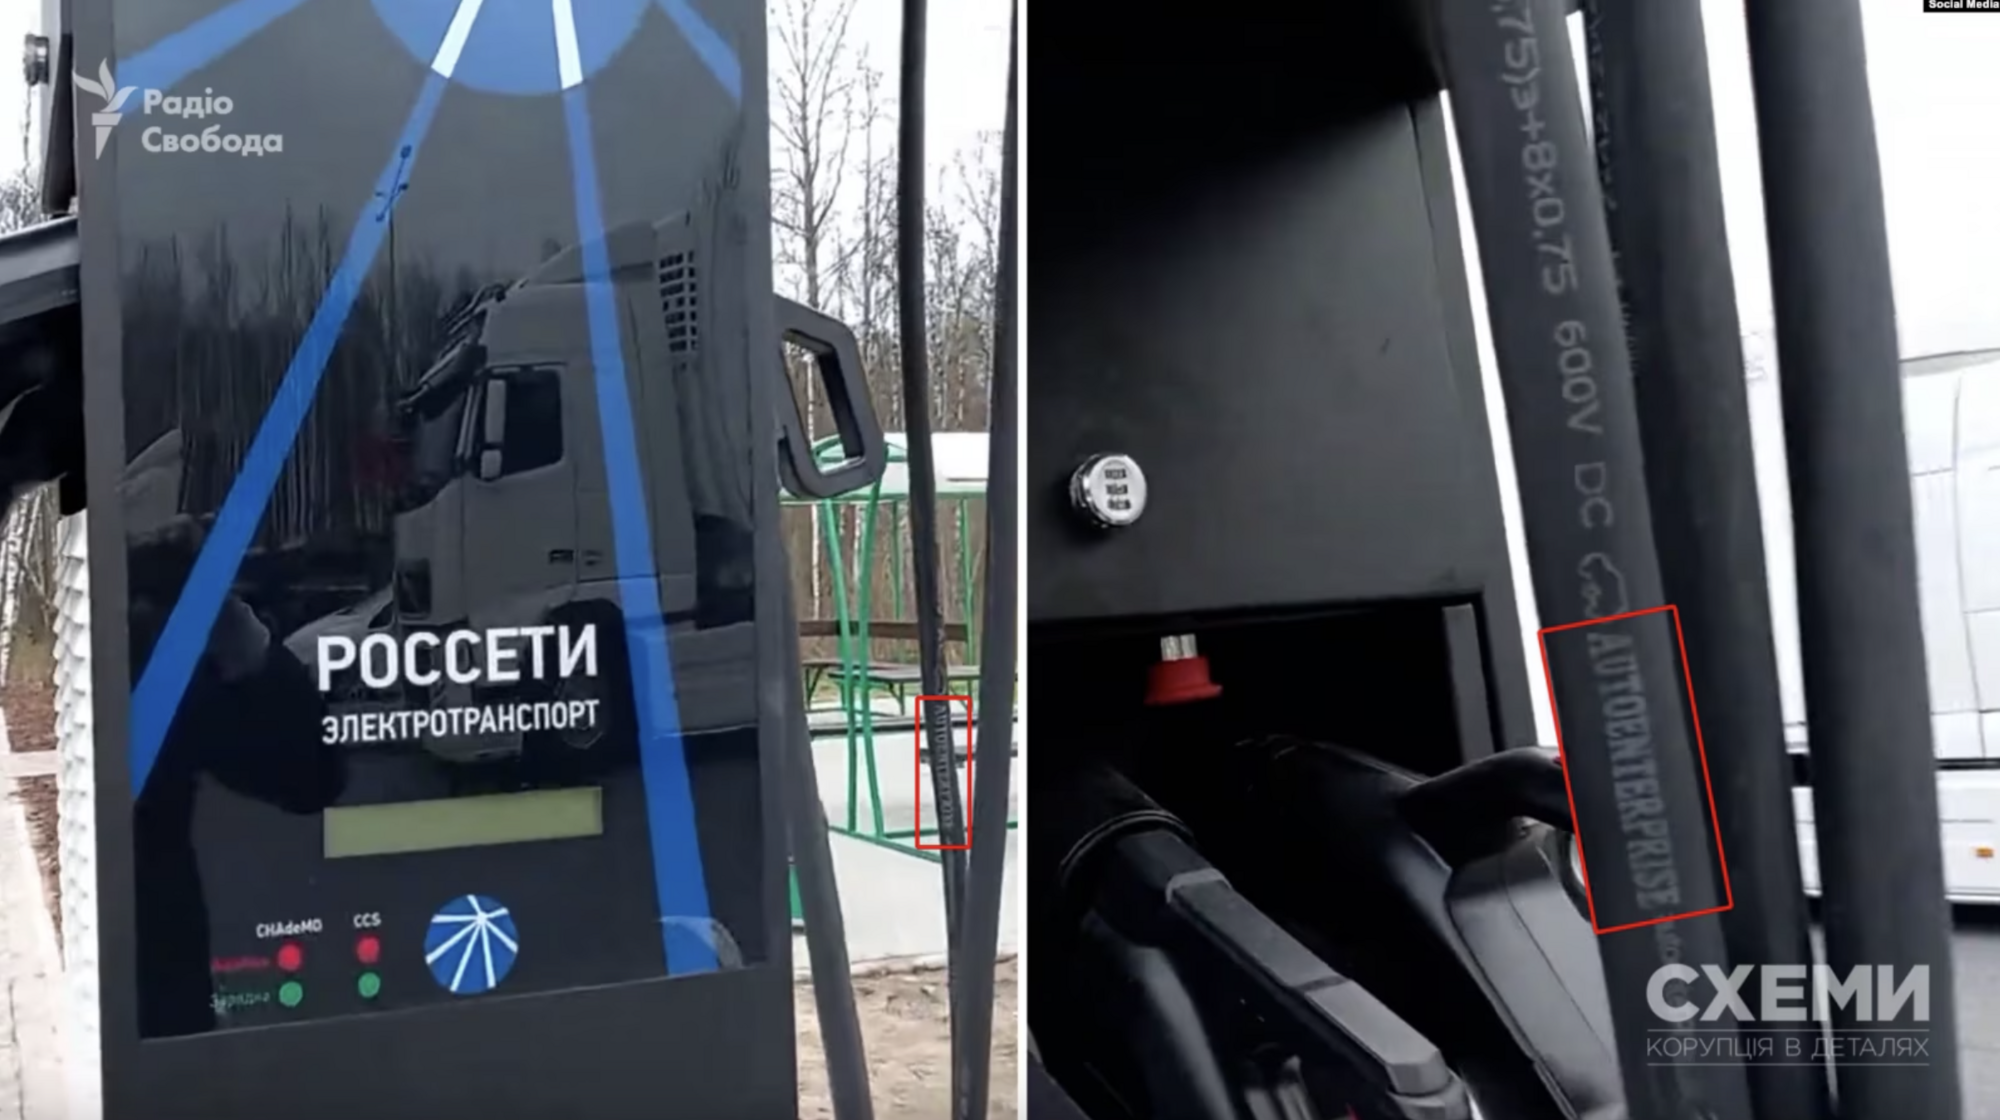 Завод з орбіти "слуги" Куницького продавав зарядні станції для окупантів у Крим – "Схеми"
